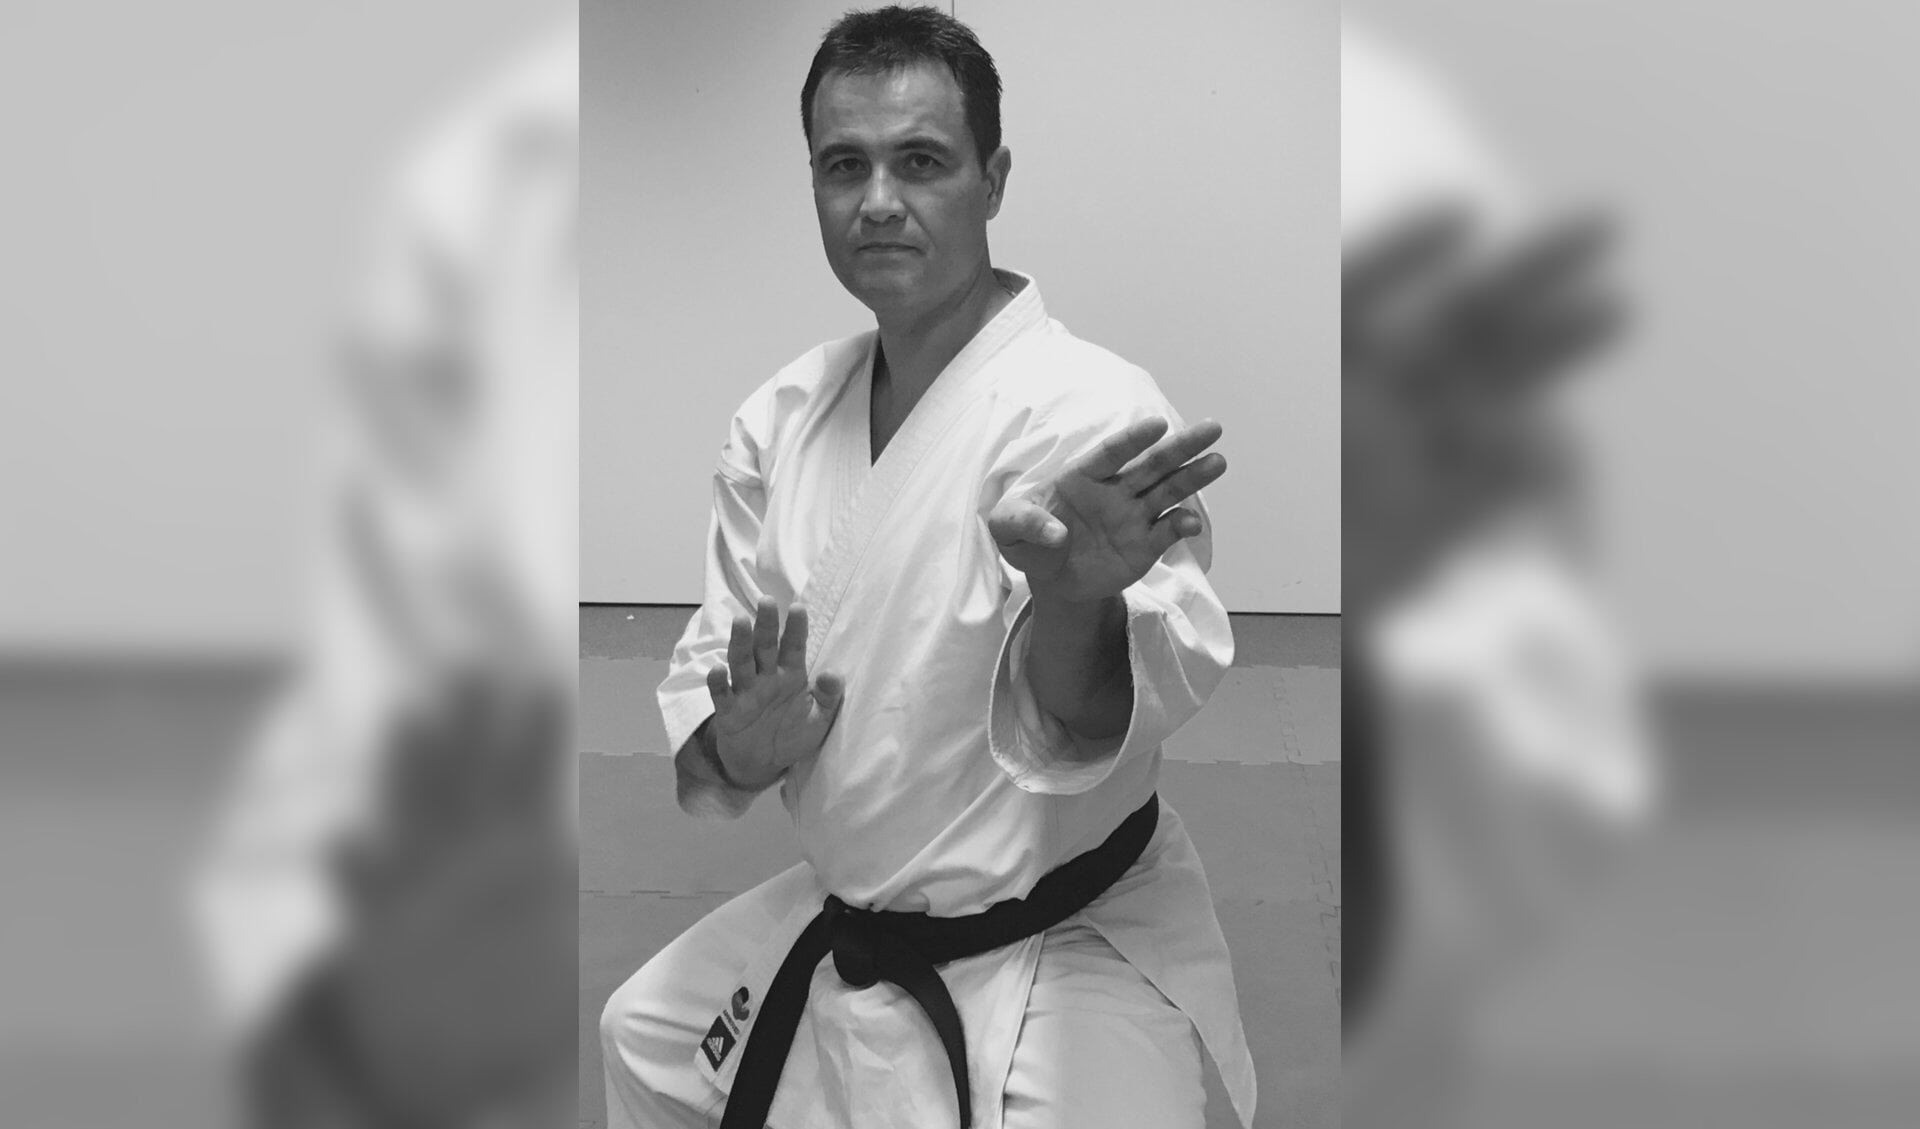 Karateschool Isshoni opent deuren in Sportblok